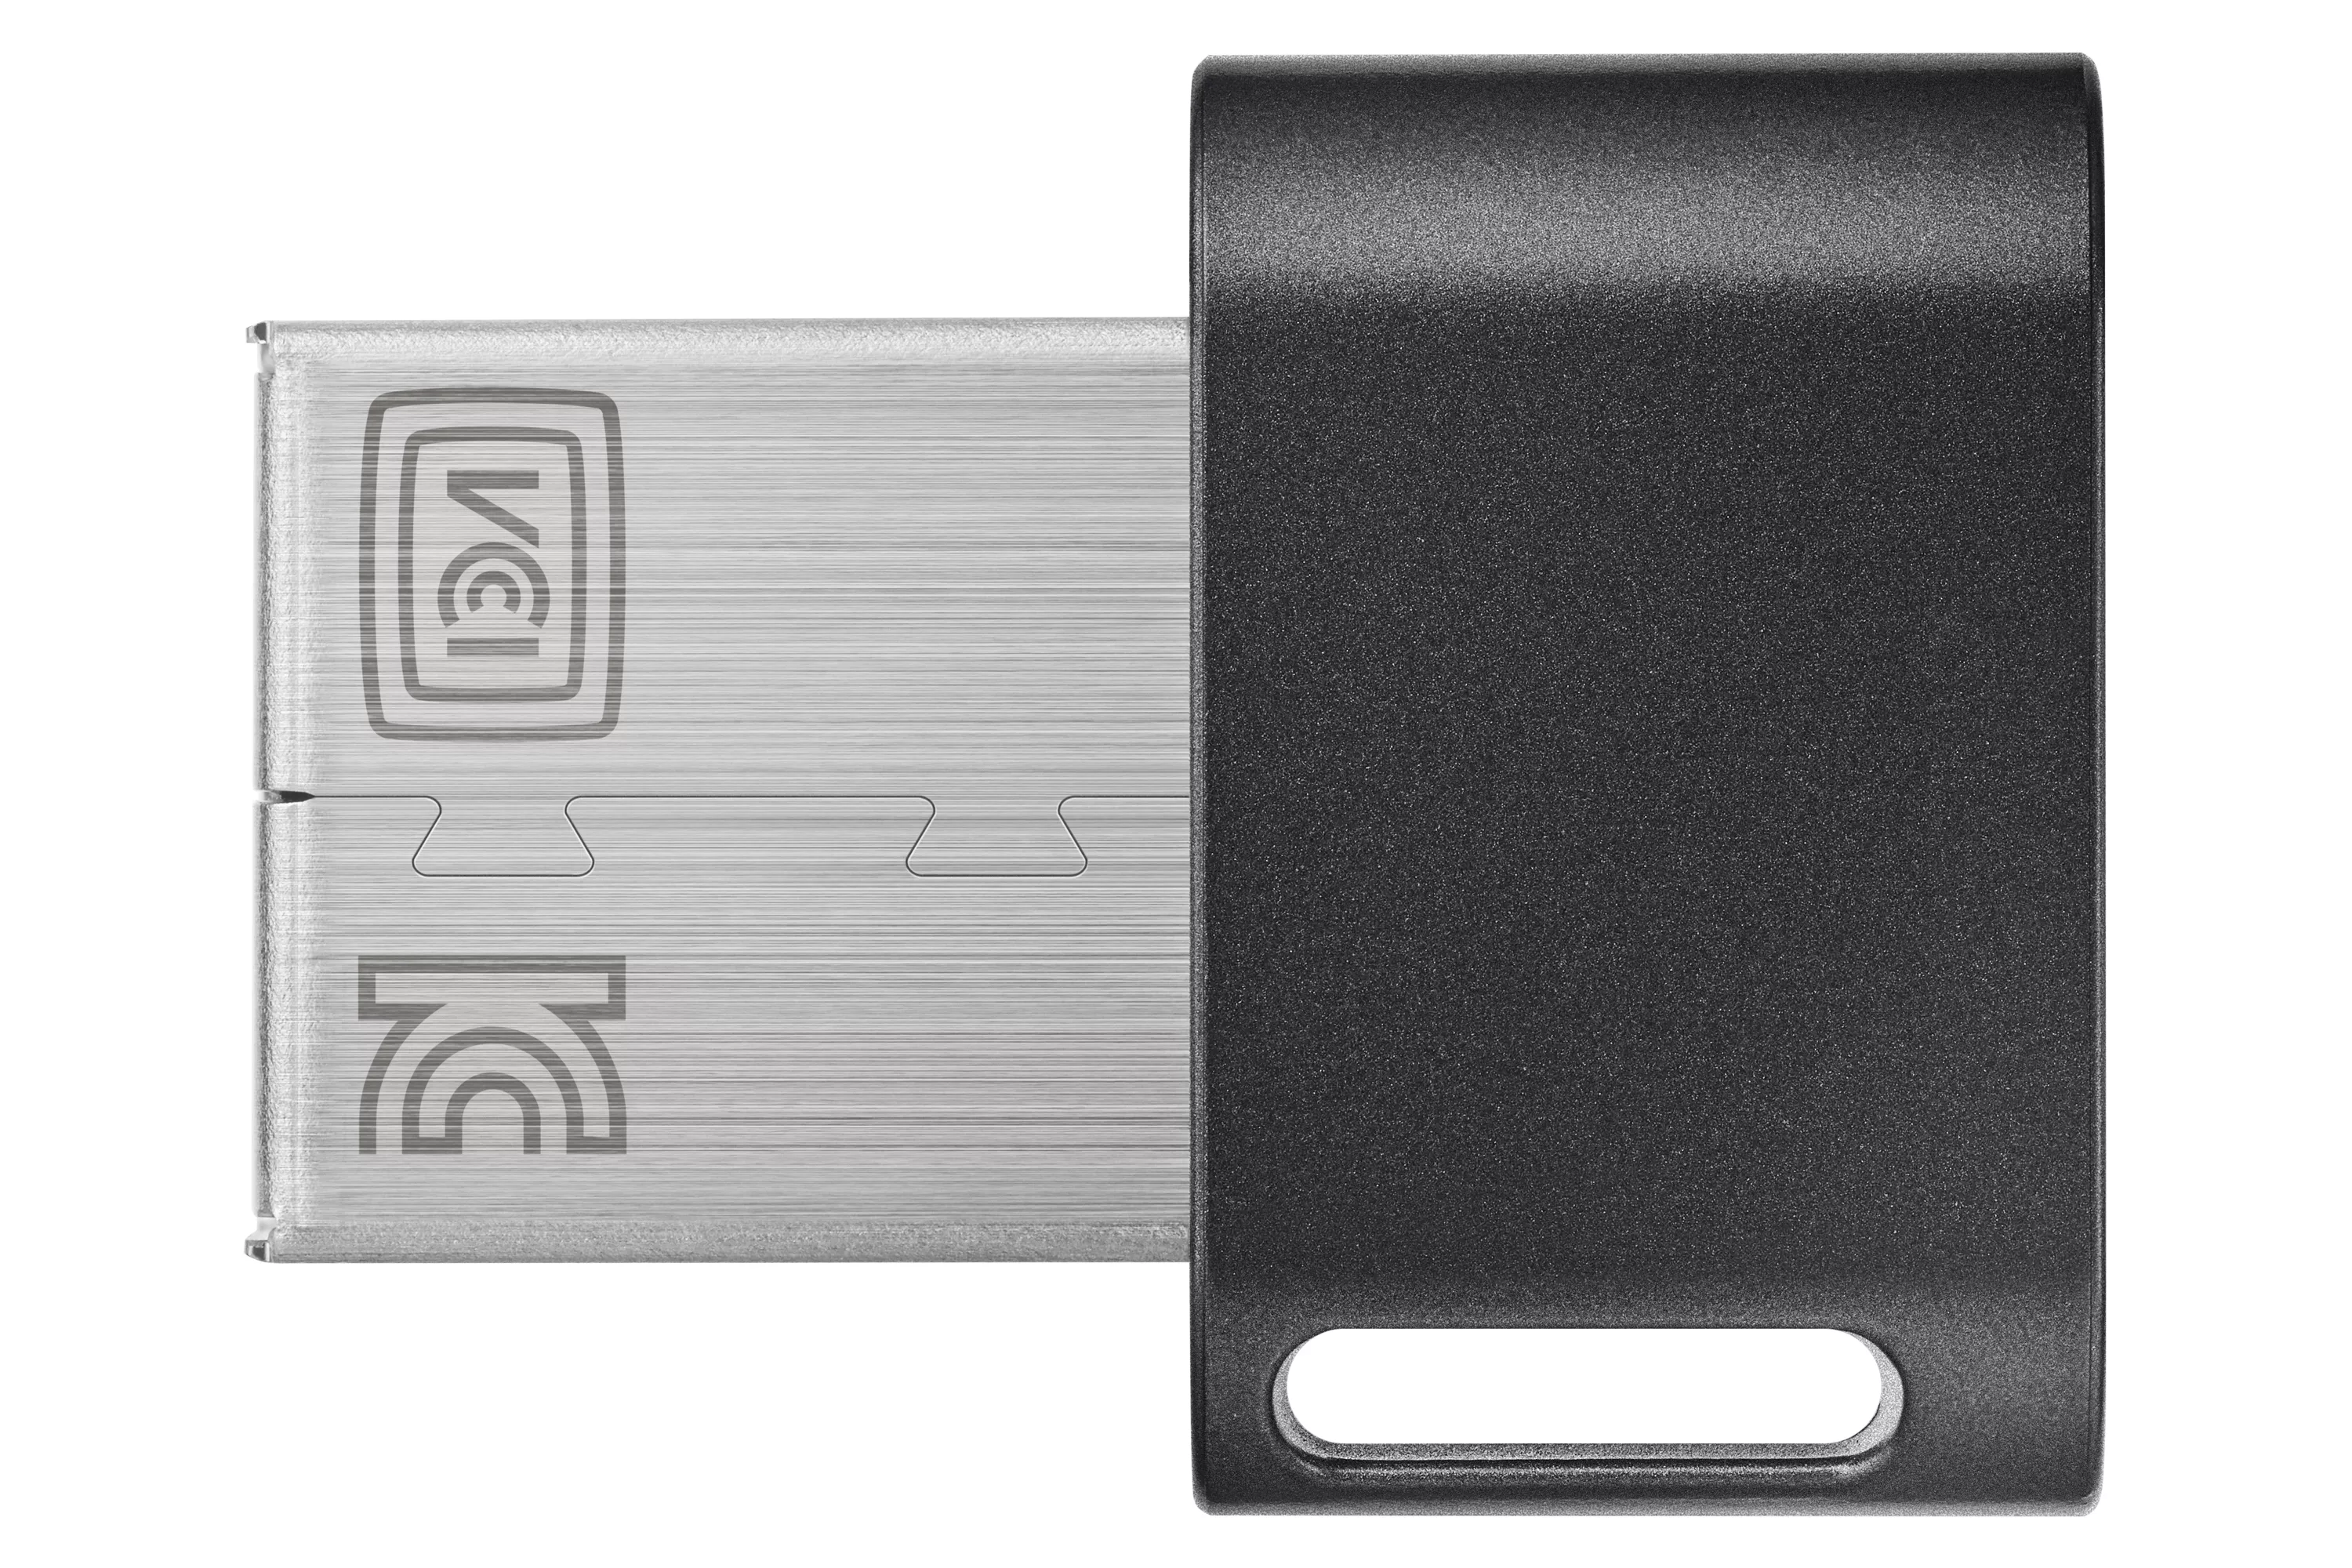 Vente SAMSUNG FIT PLUS 64Go USB 3.1 Samsung au meilleur prix - visuel 2